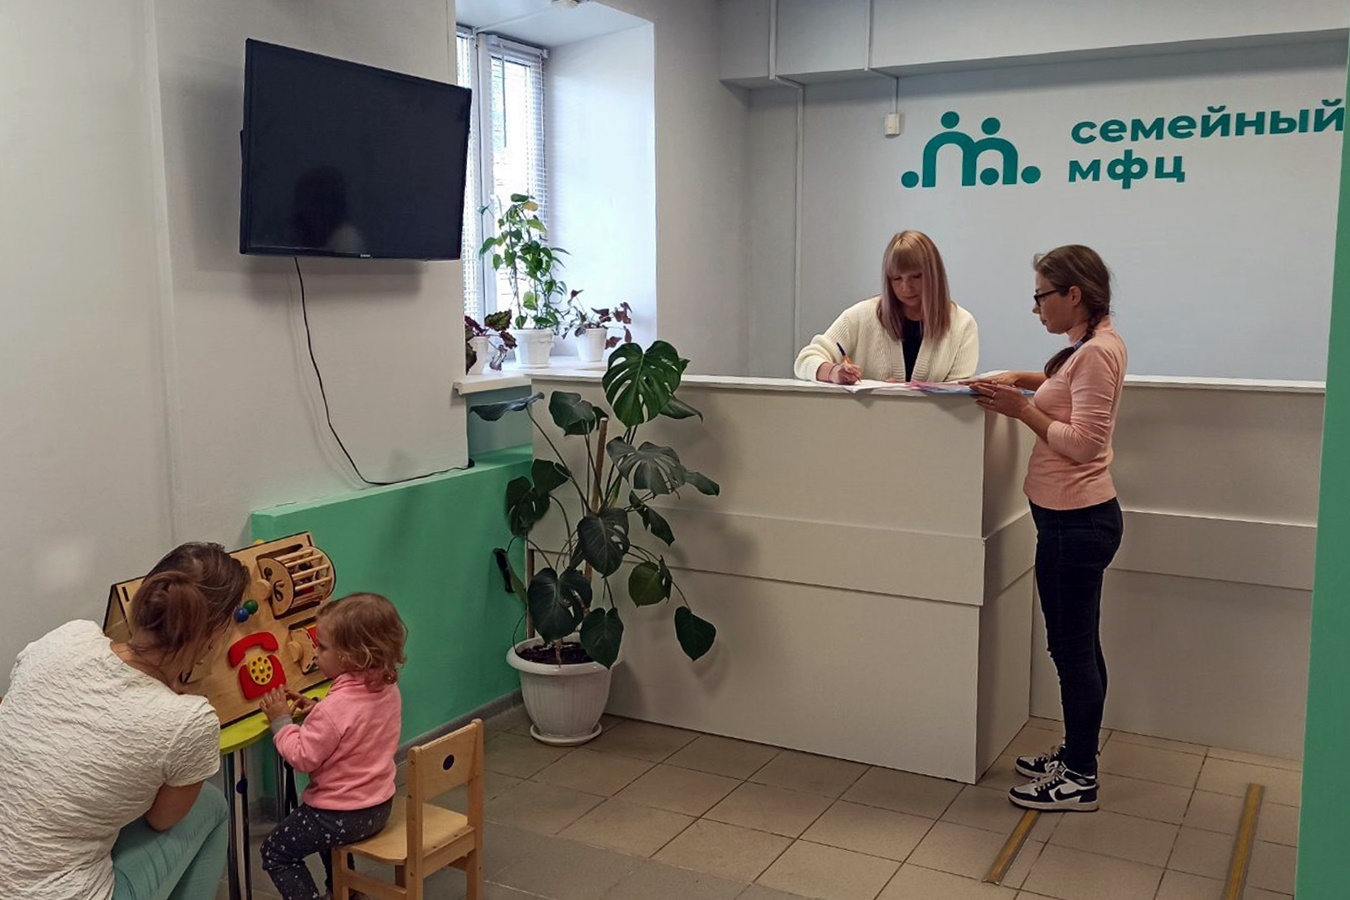 Минтруд сообщил, что в РФ более 80 тыс. семей воспользовались услугами семейных МФЦ